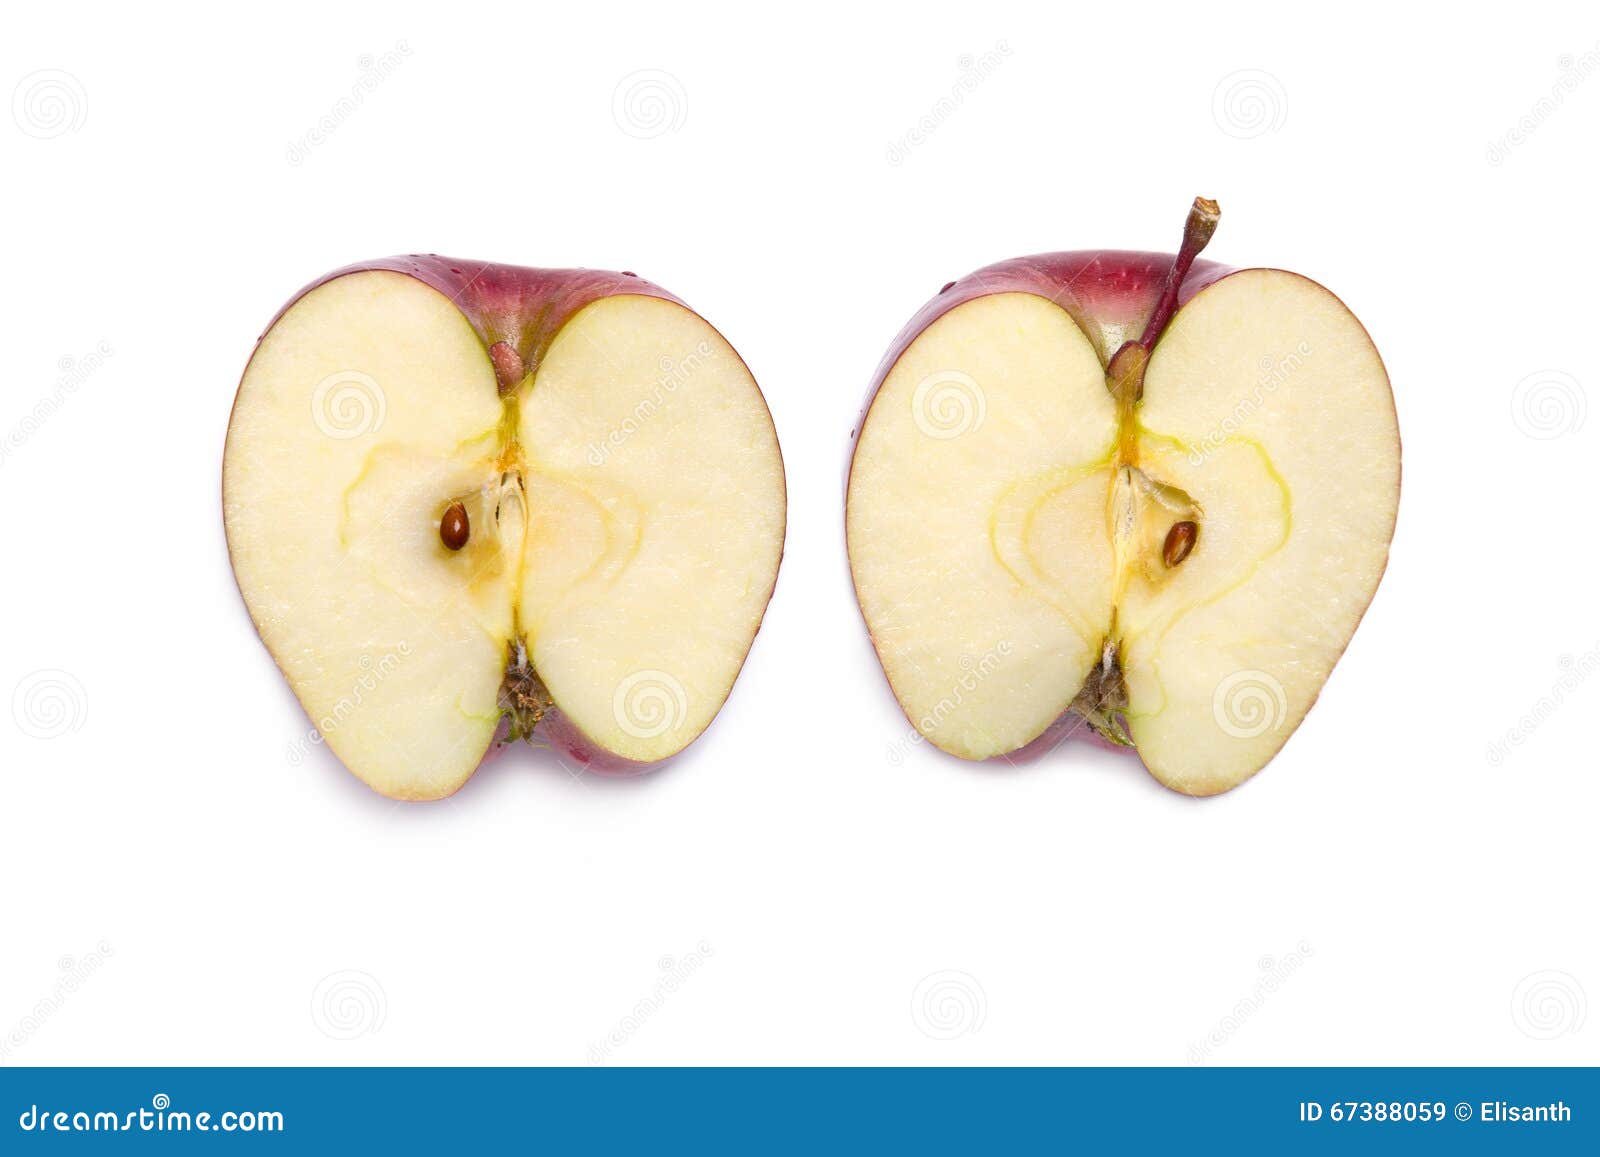 Яблоко разрезанное пополам